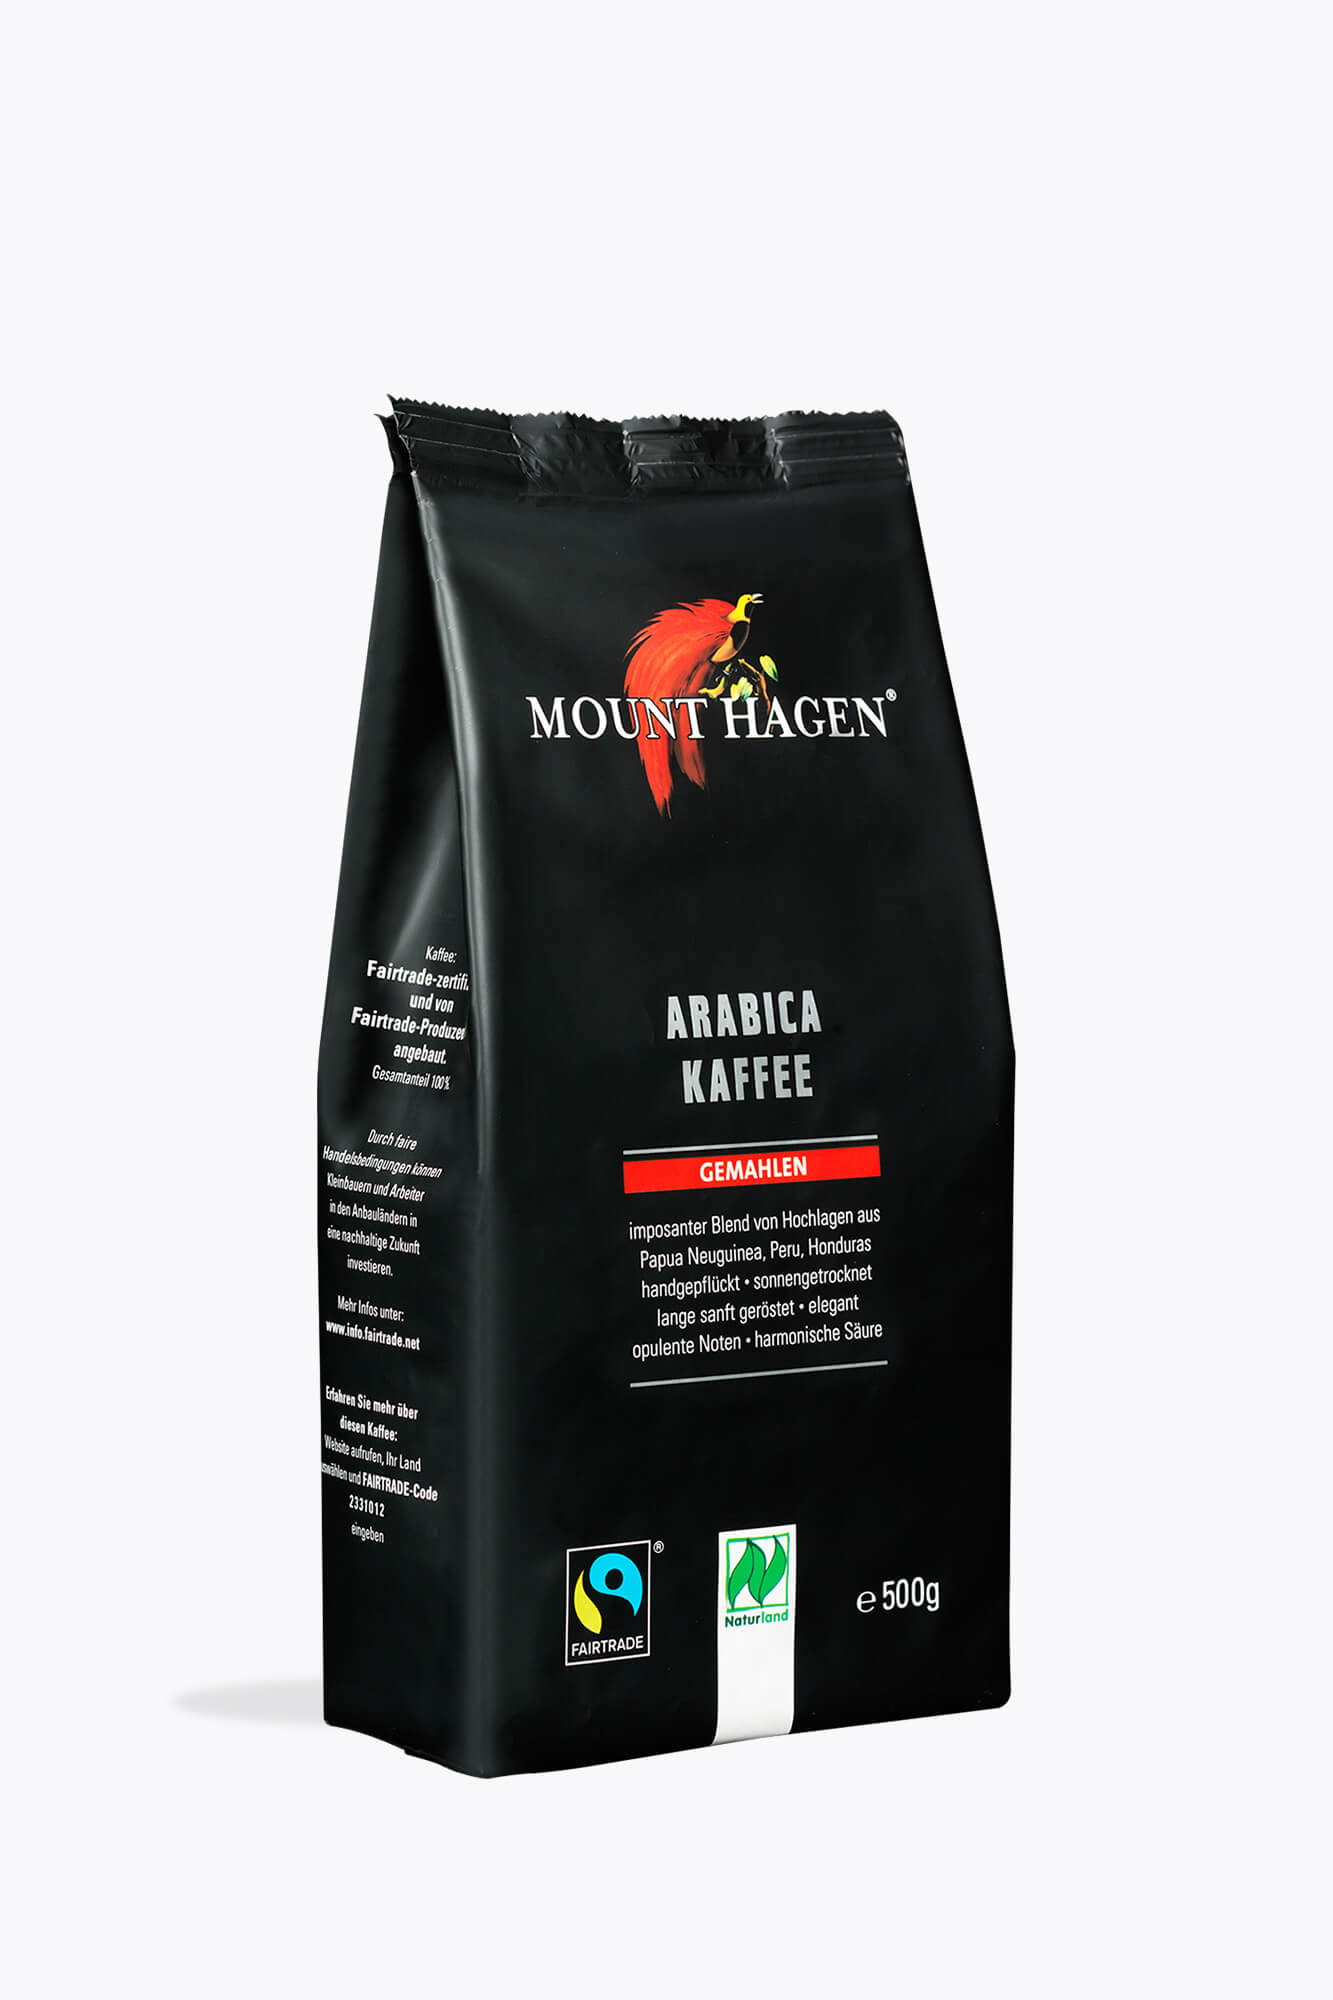 Hagen Mount Hagen Arabica Kaffee gemahlen 500g